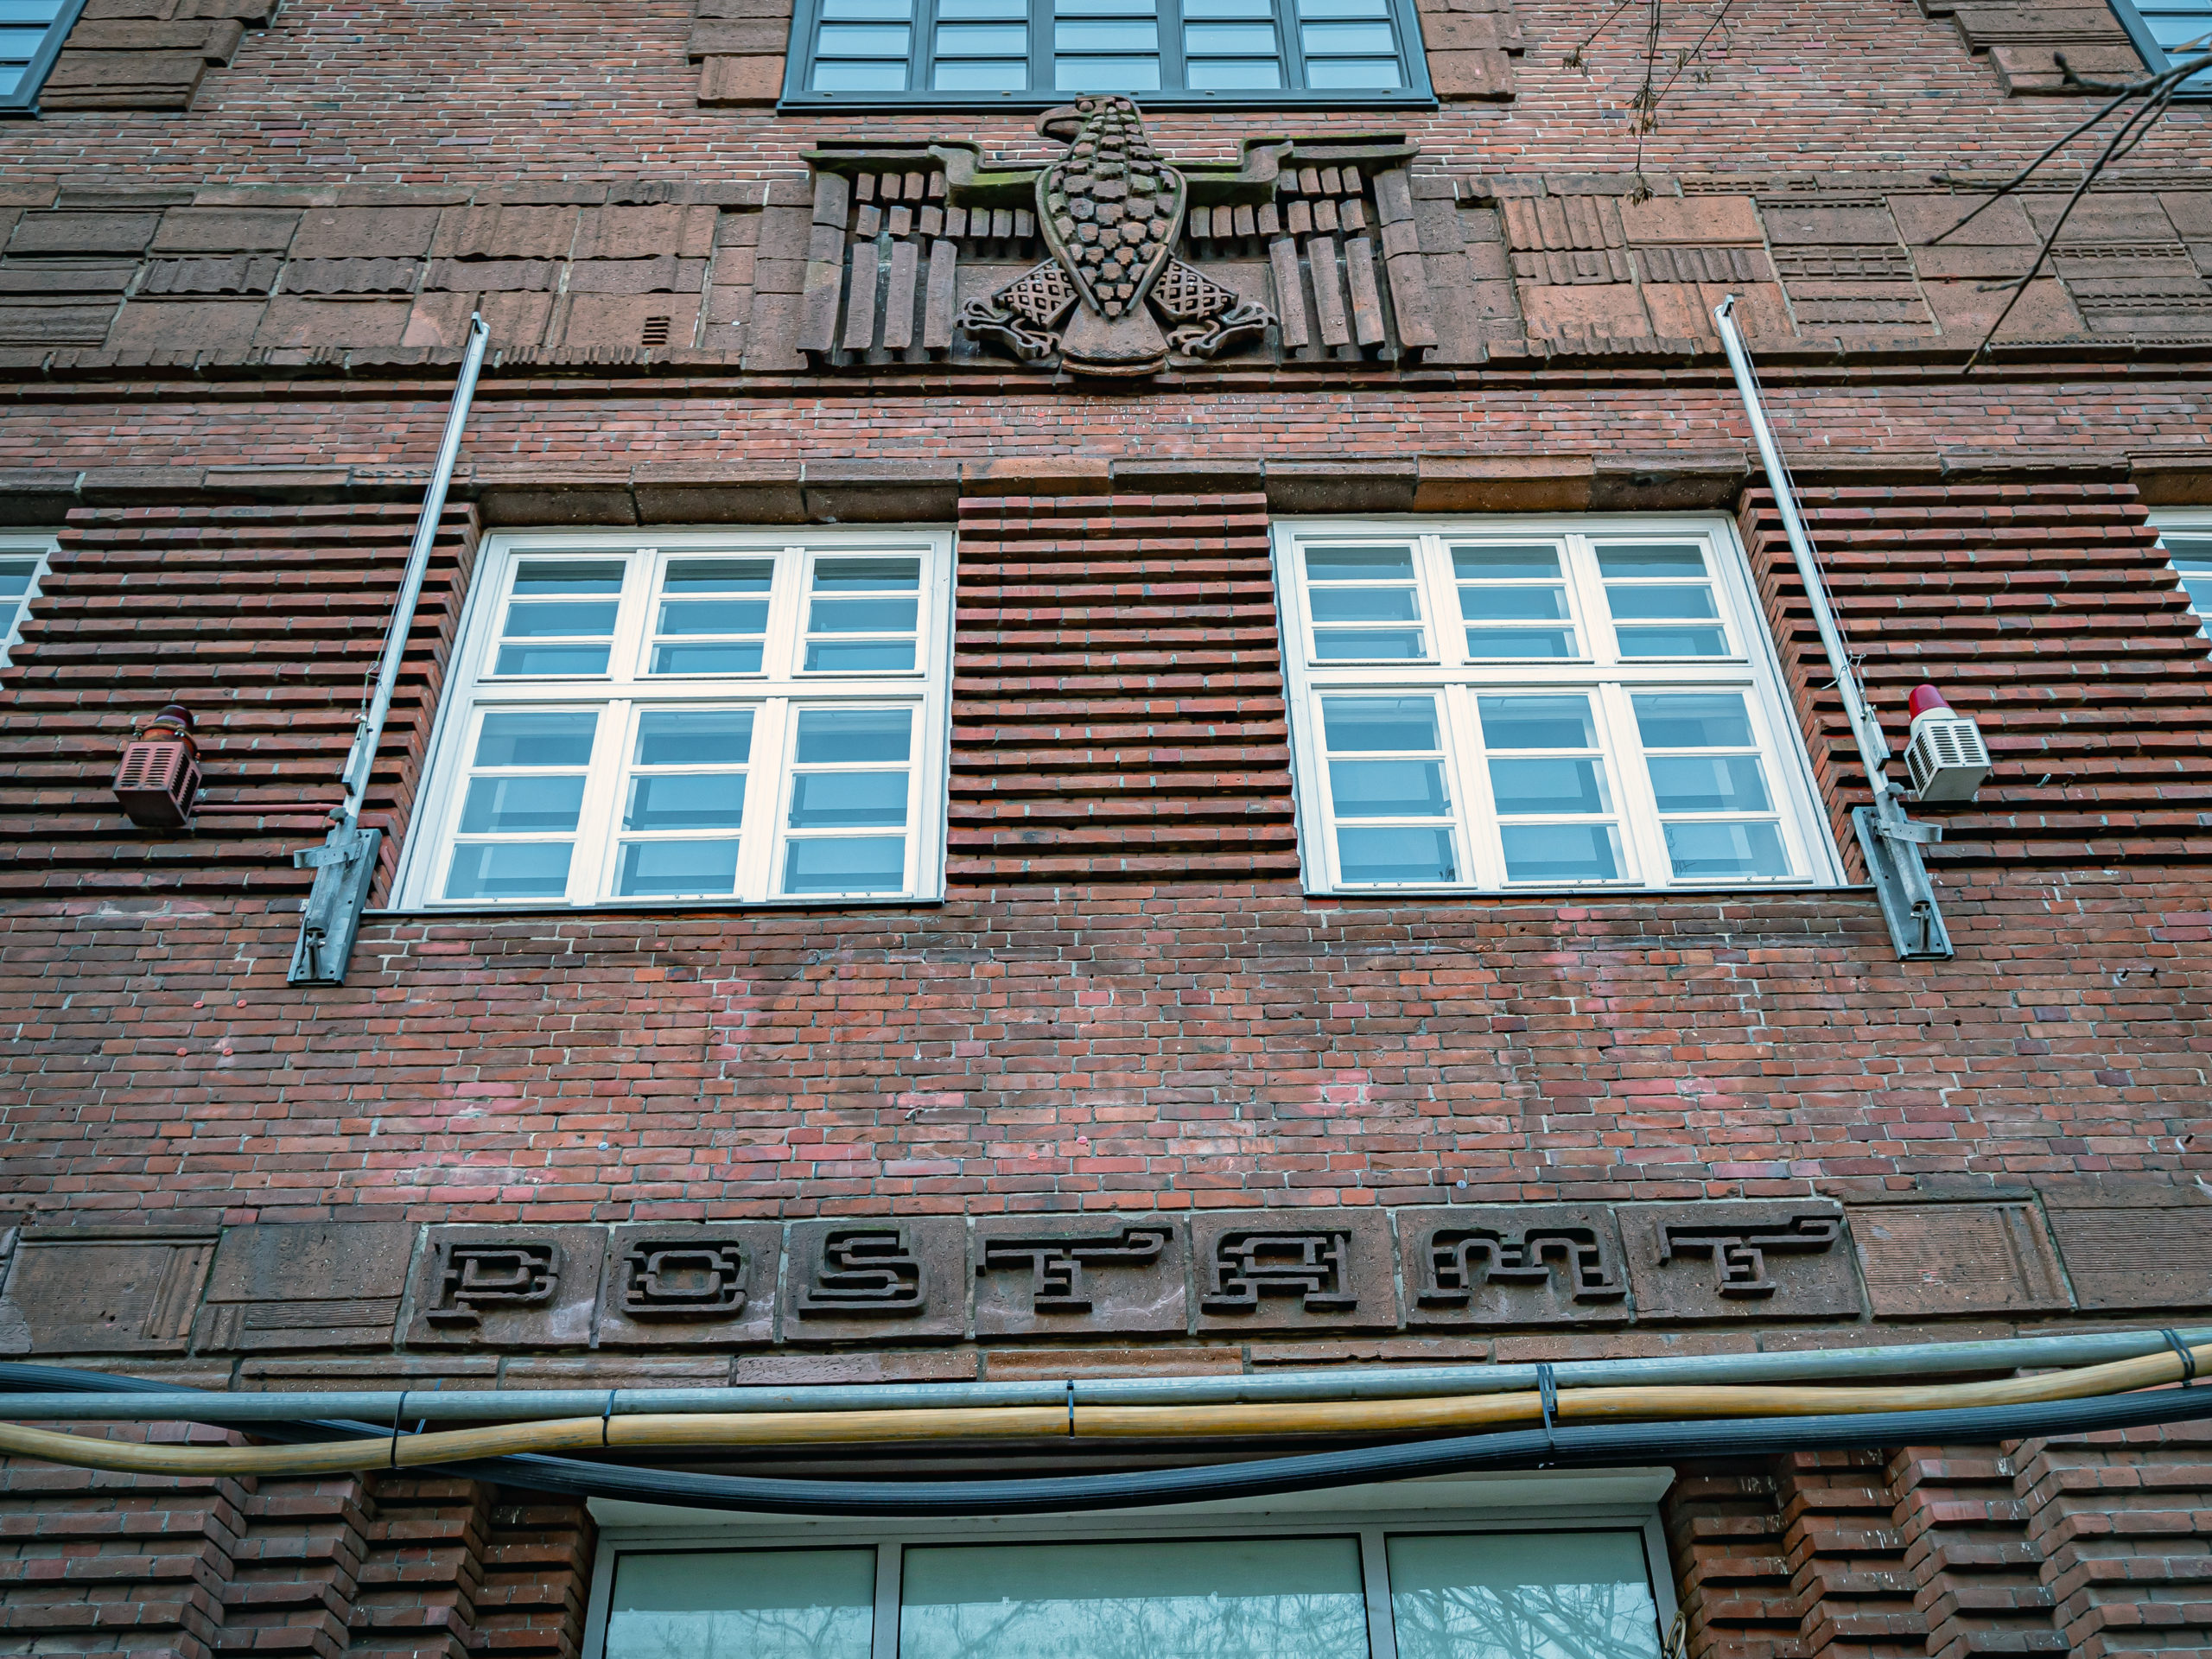 Viele Postgebäude in Berlin sind aus Backstein gemauert und mit expressionistischen Details versehen. Foto: Imago/Jürgen Ritter